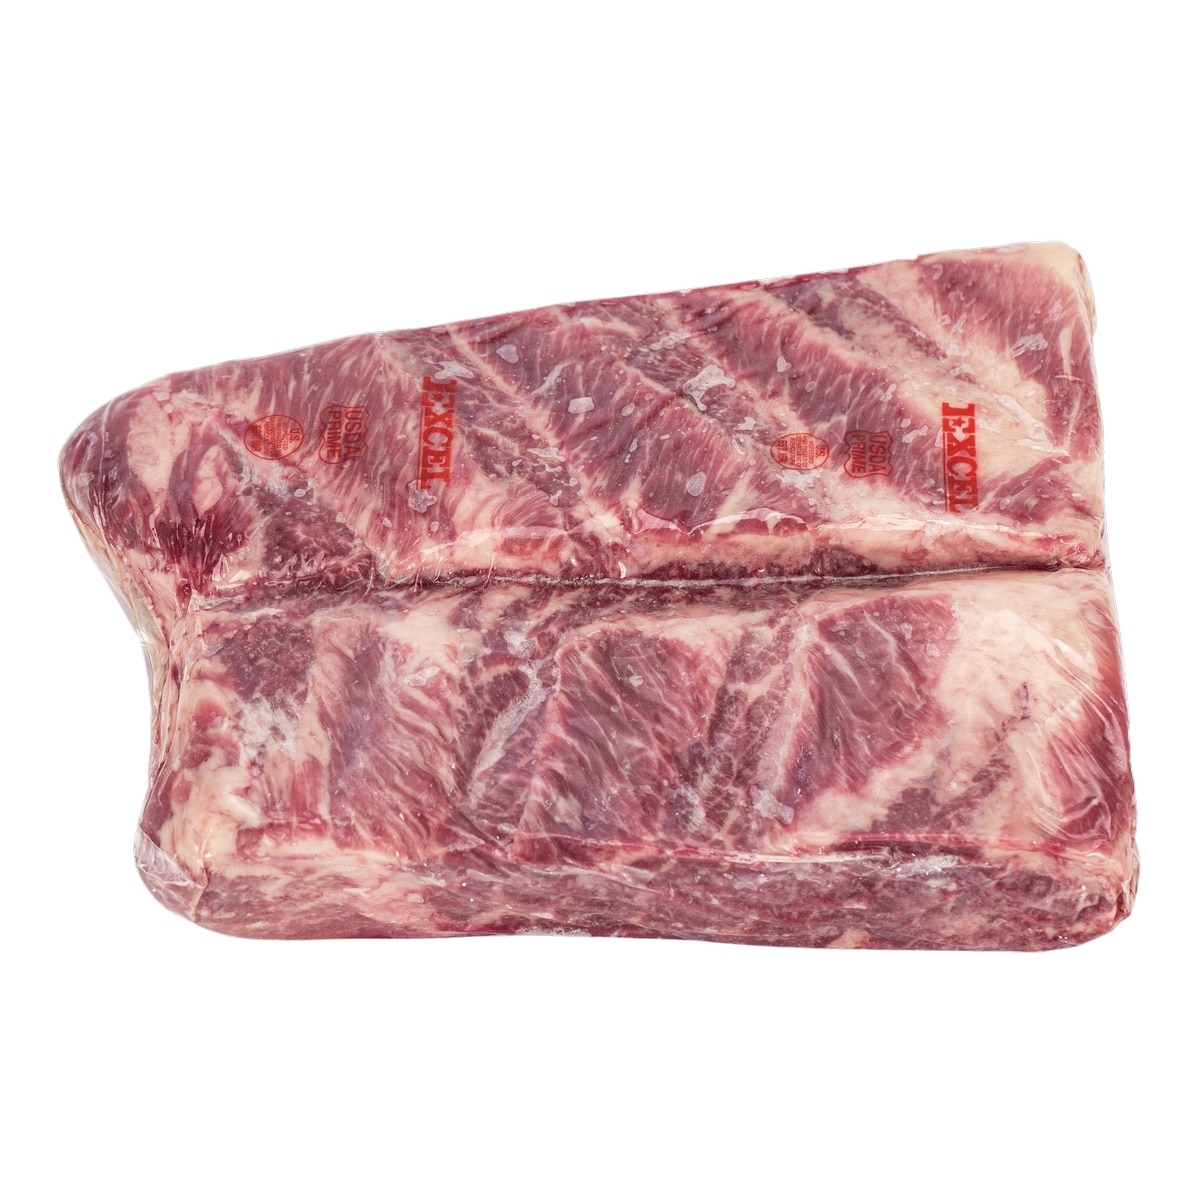 美國頂級冷凍翼板肉 23公斤 / 箱